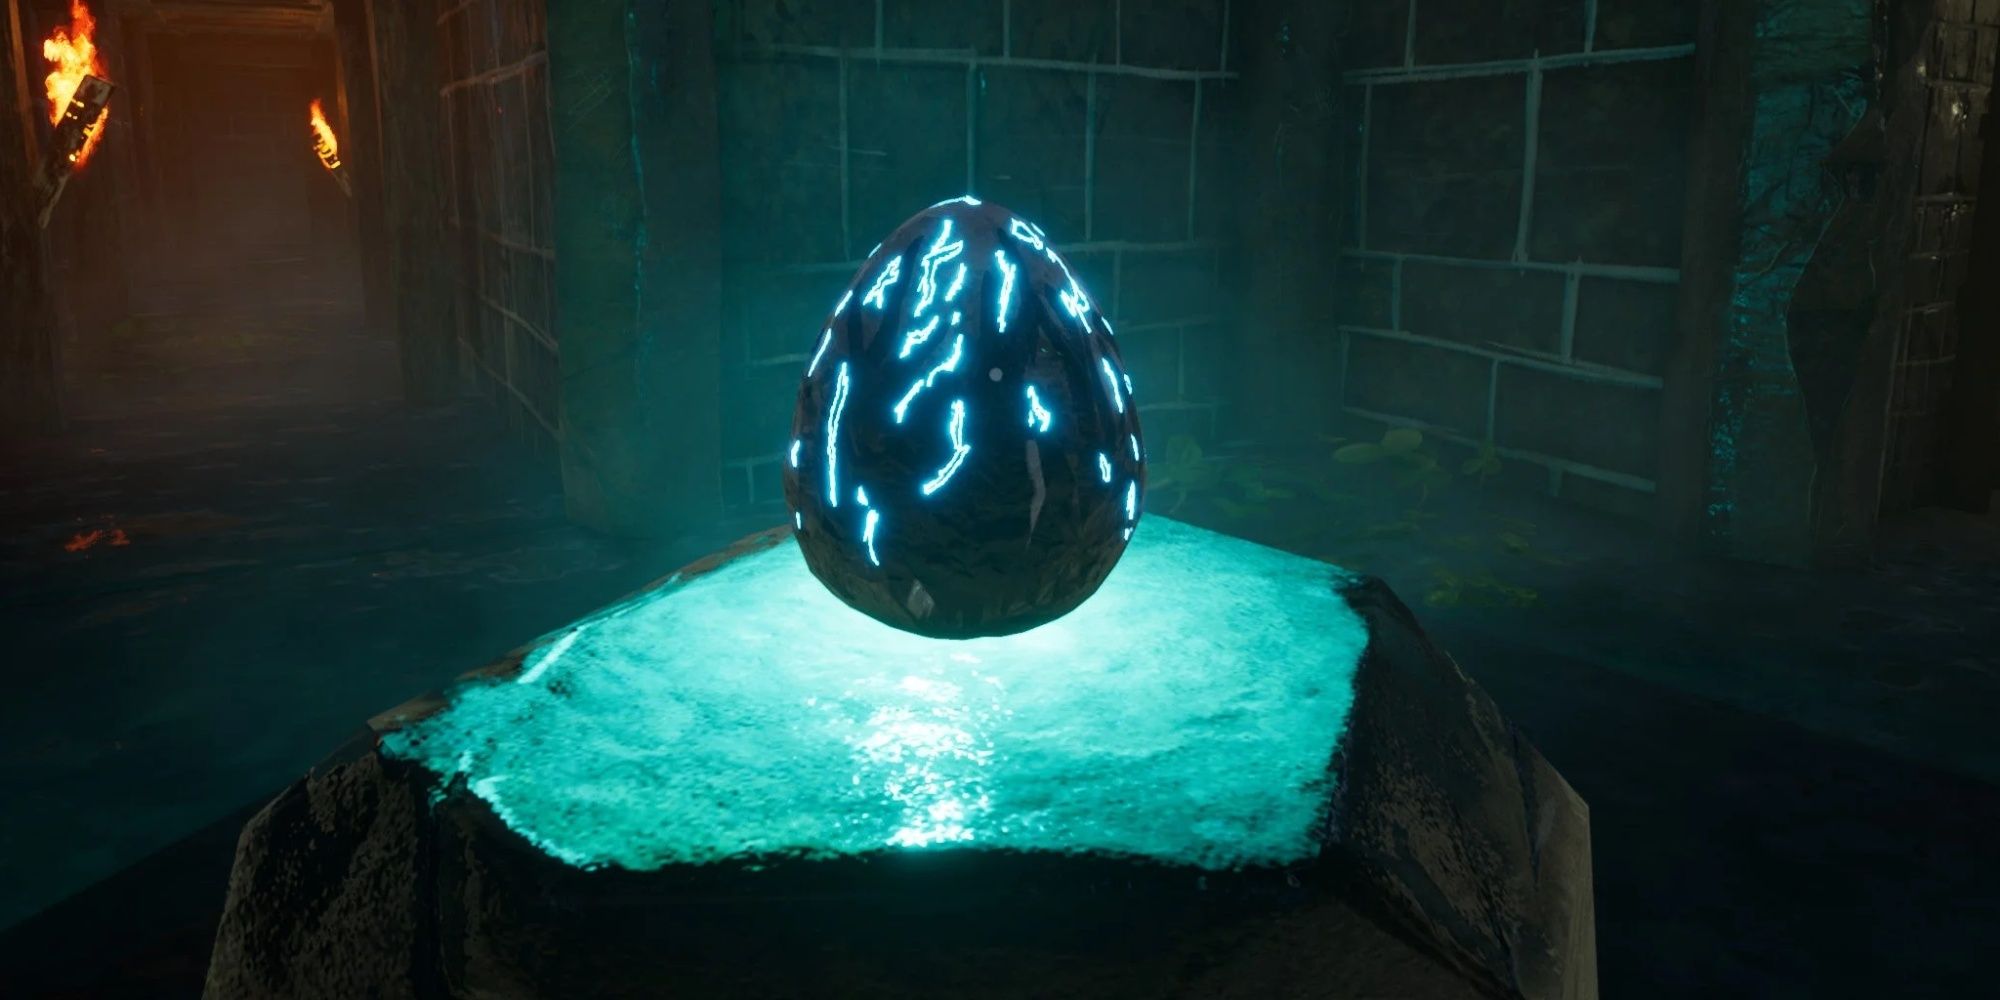 Choo-Choo Charles: The Blue Egg In The Mine